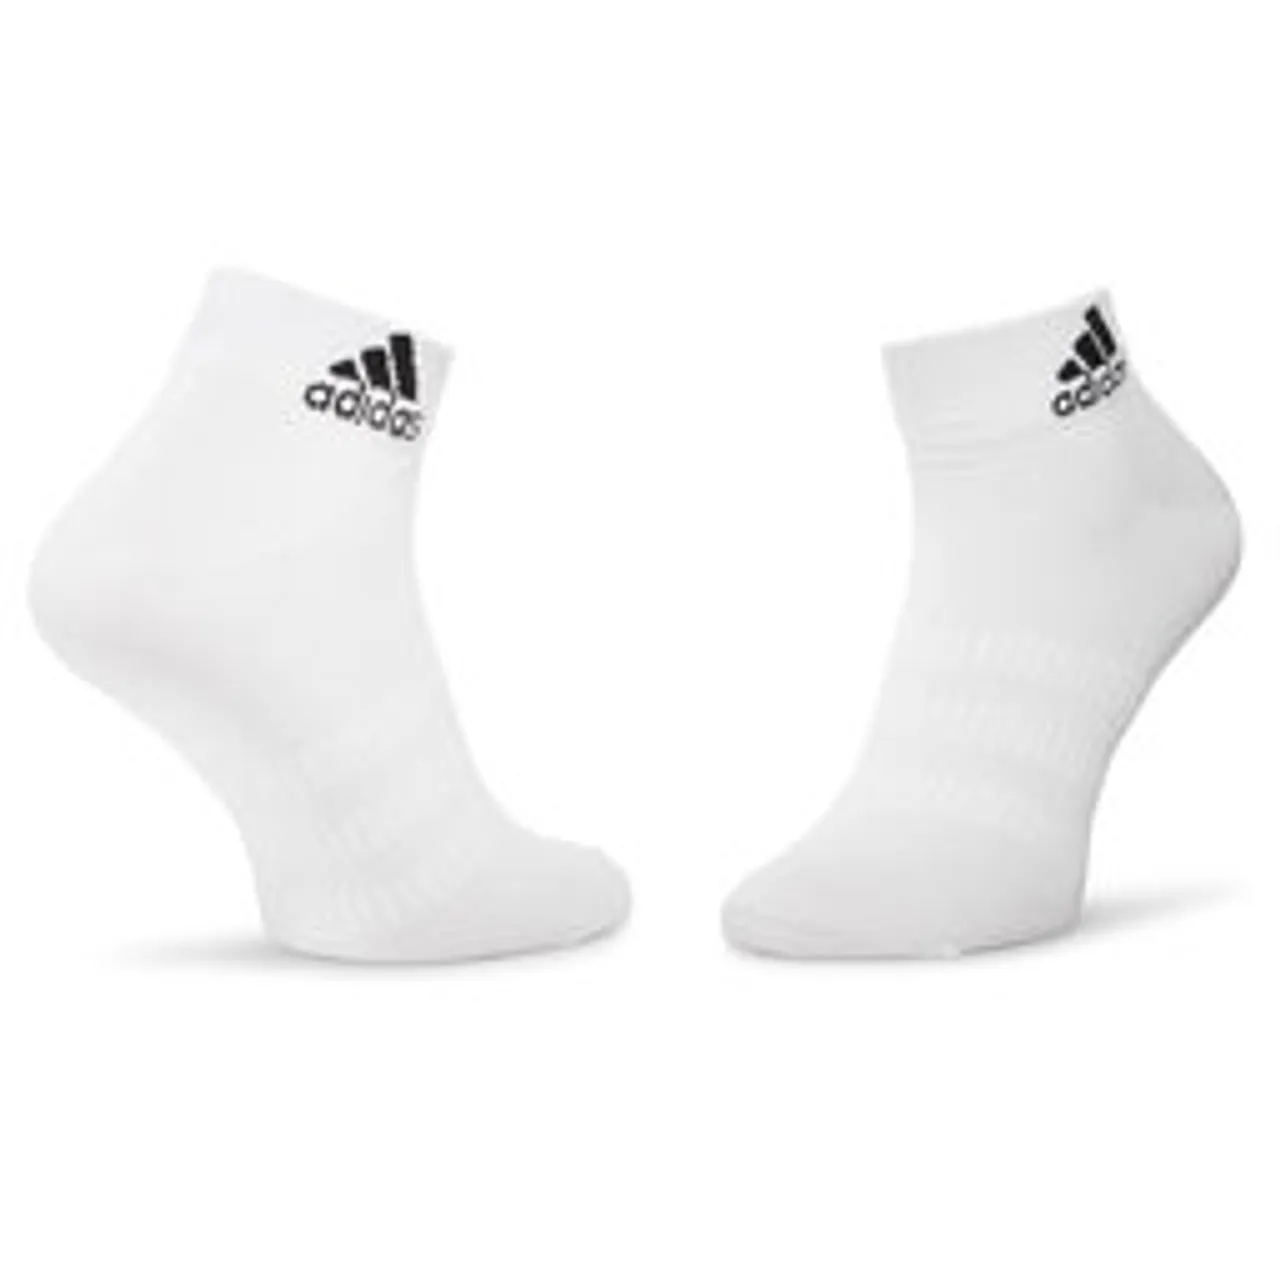 3er-Set niedrige Unisex-Socken adidas Light Ank 3PP DZ9435 White/White/White